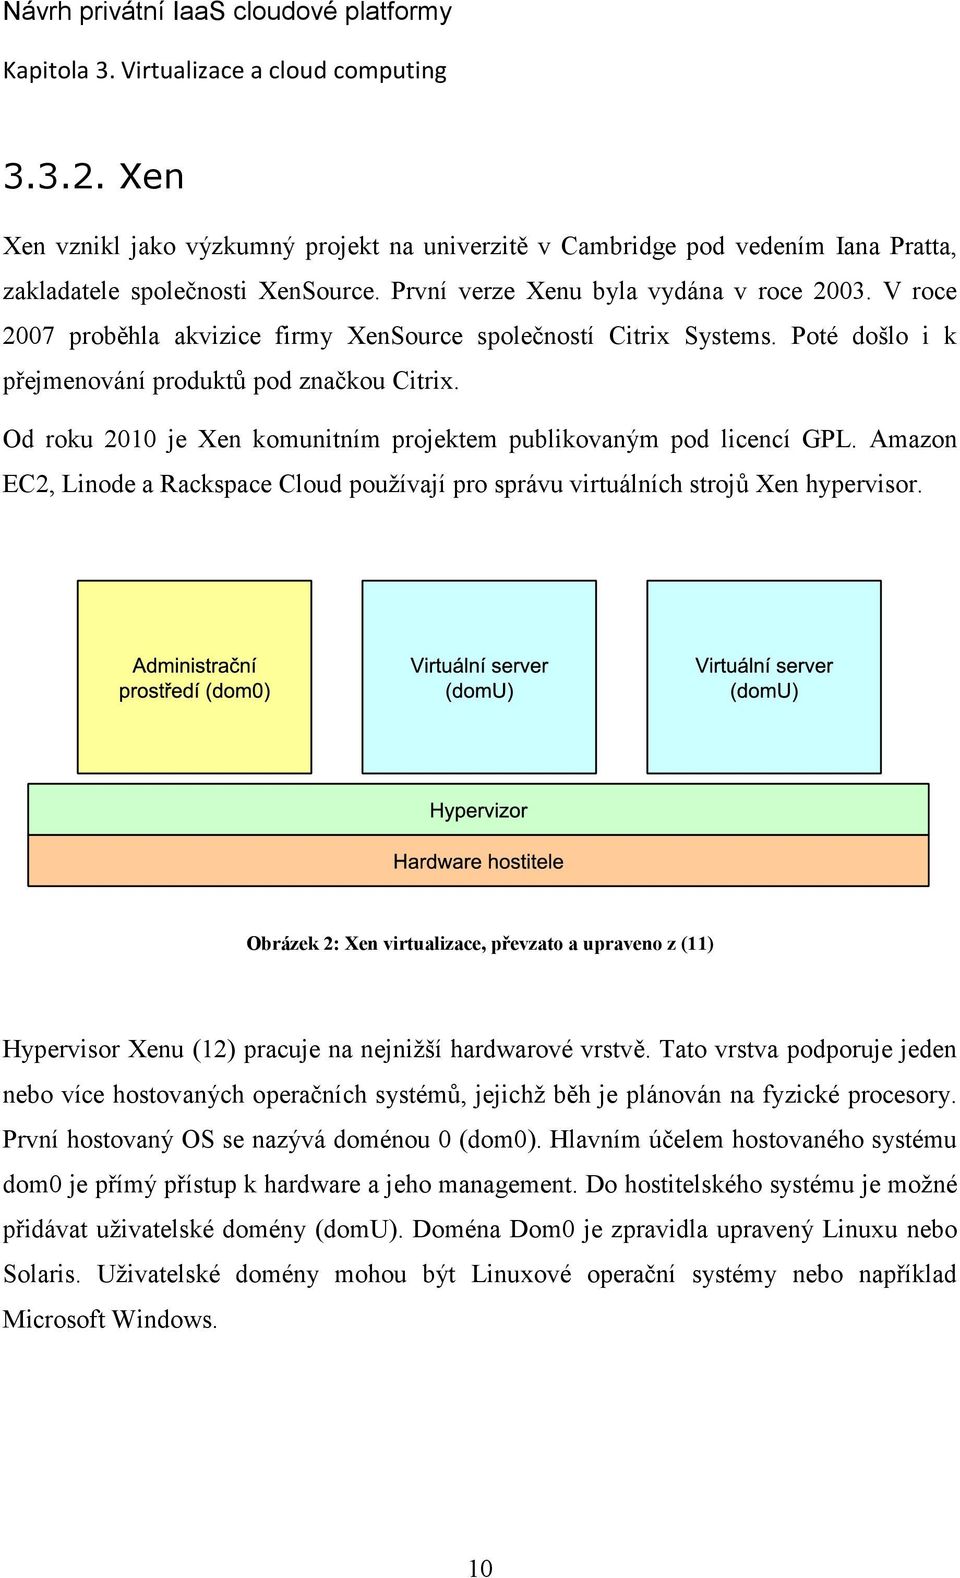 Od roku 2010 je Xen komunitním projektem publikovaným pod licencí GPL. Amazon EC2, Linode a Rackspace Cloud používají pro správu virtuálních strojů Xen hypervisor.